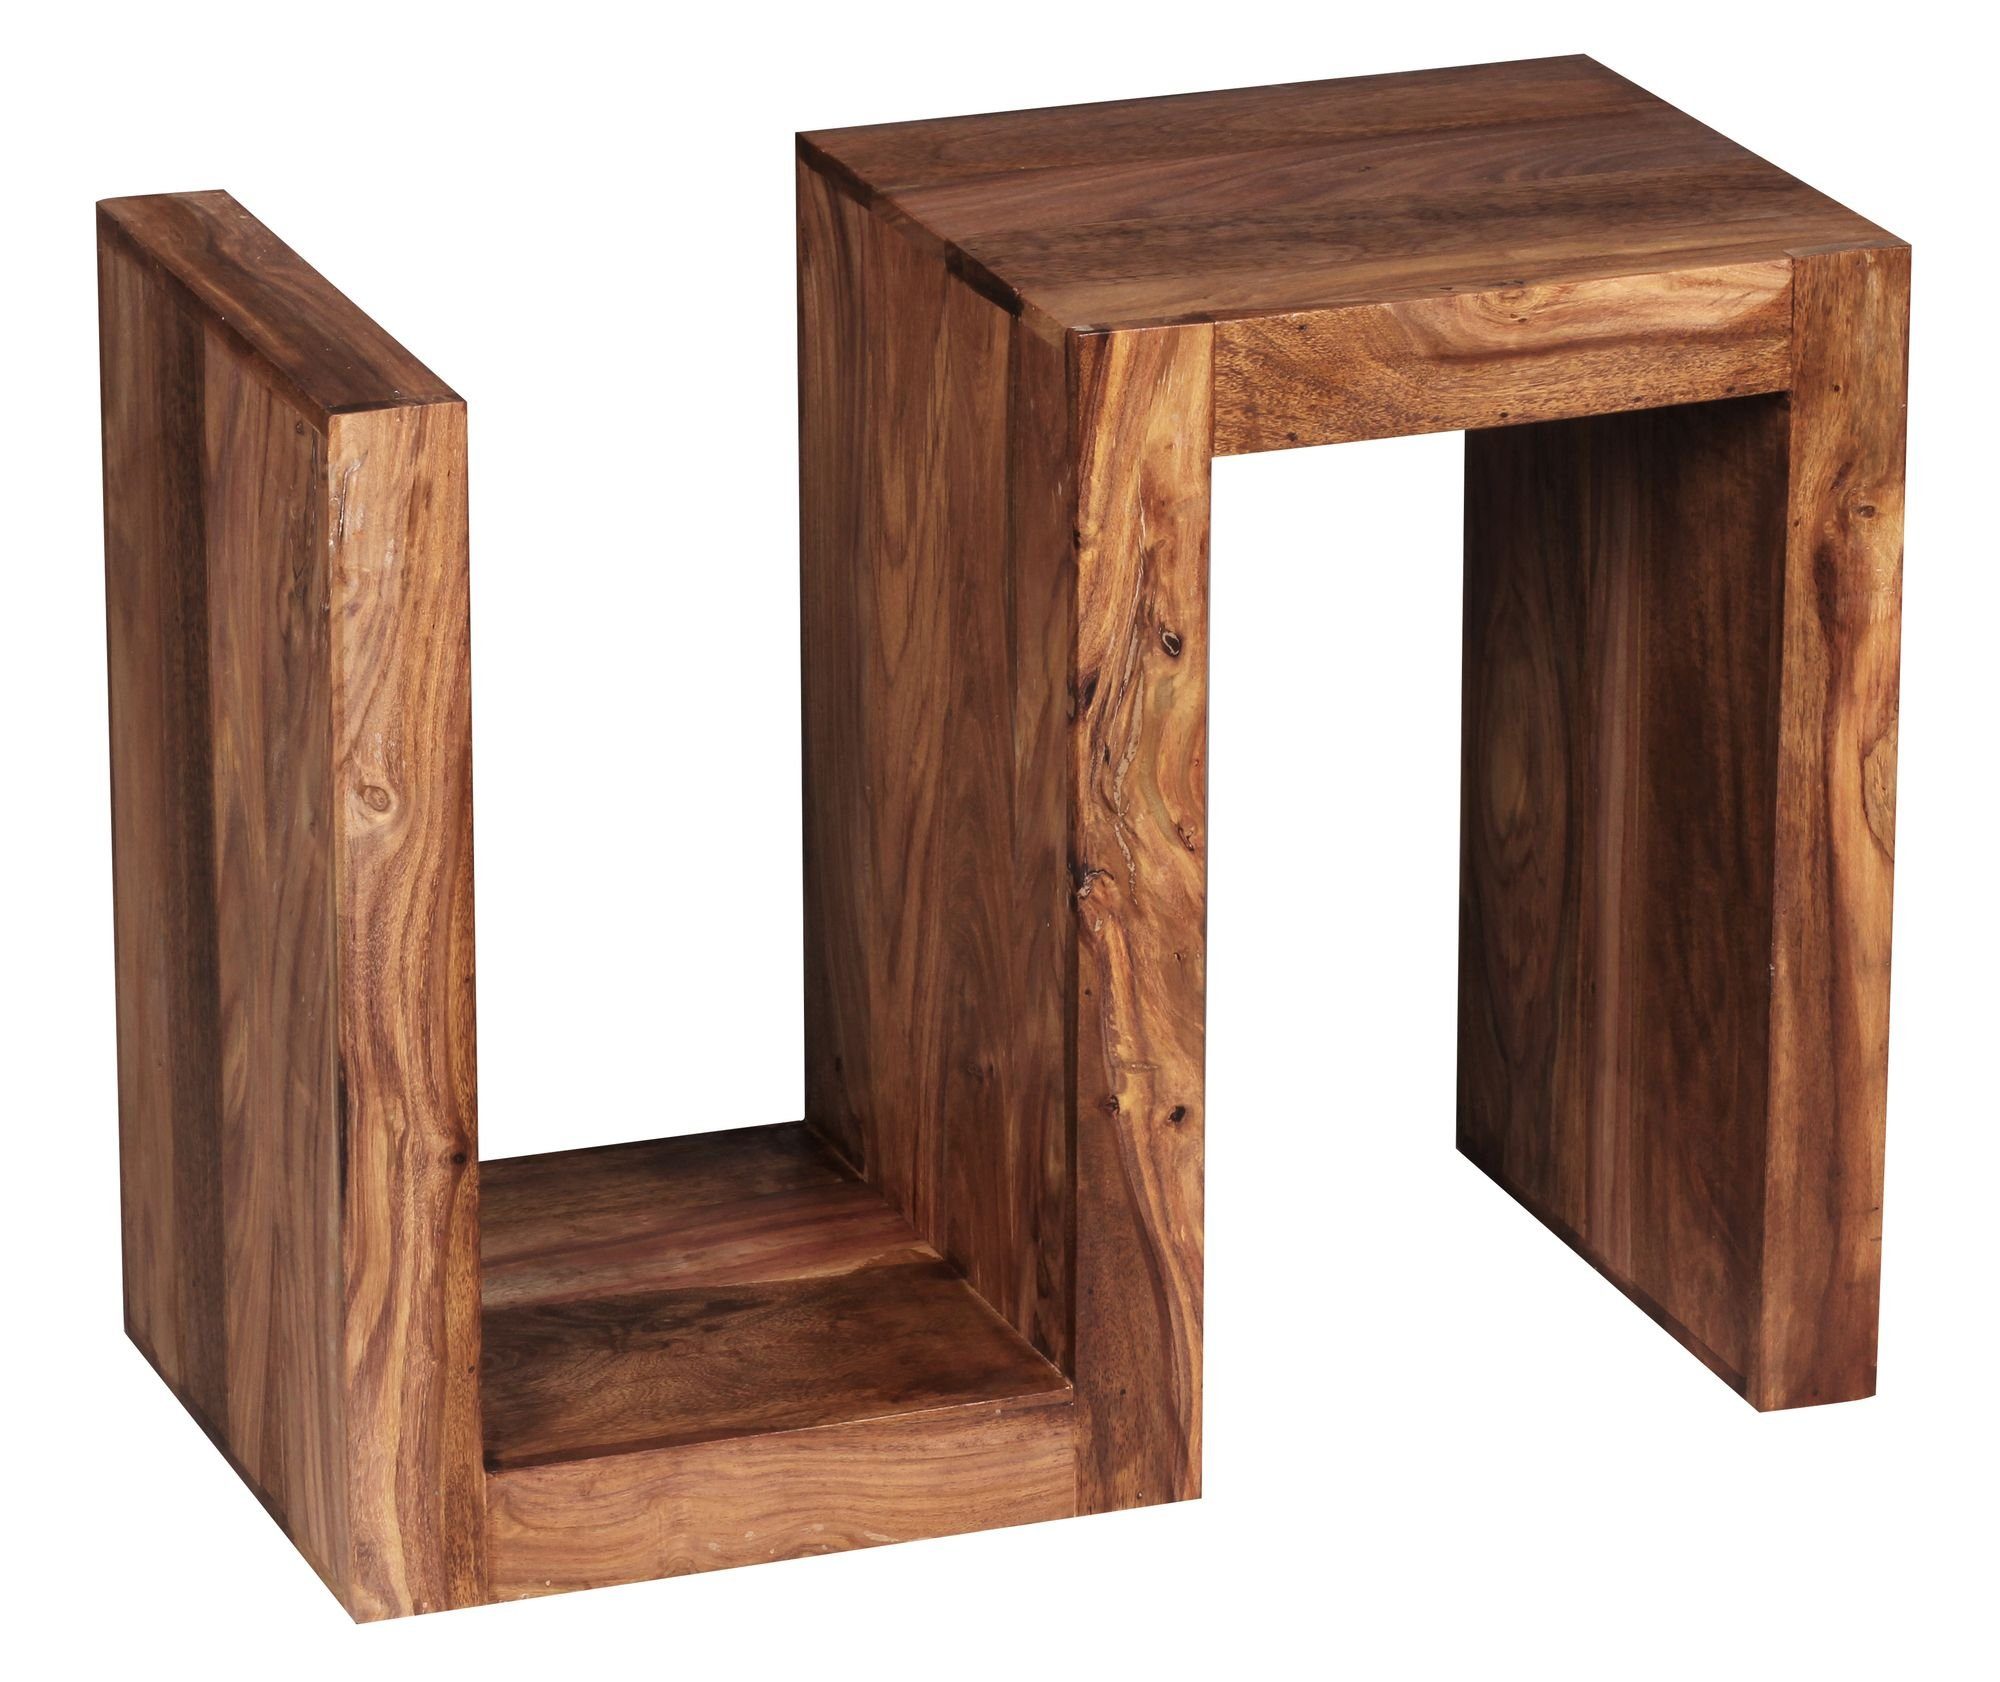 Cube, Sheesham MUMBAI S Beistelltisch Massivholz Design MUMBAI Cube Massivholz Landhaus-Stil S Sheesham braun 60cm hoch Wohnzimmer-Tisch Couchtisch möbelando Beistelltisch Beistelltisch